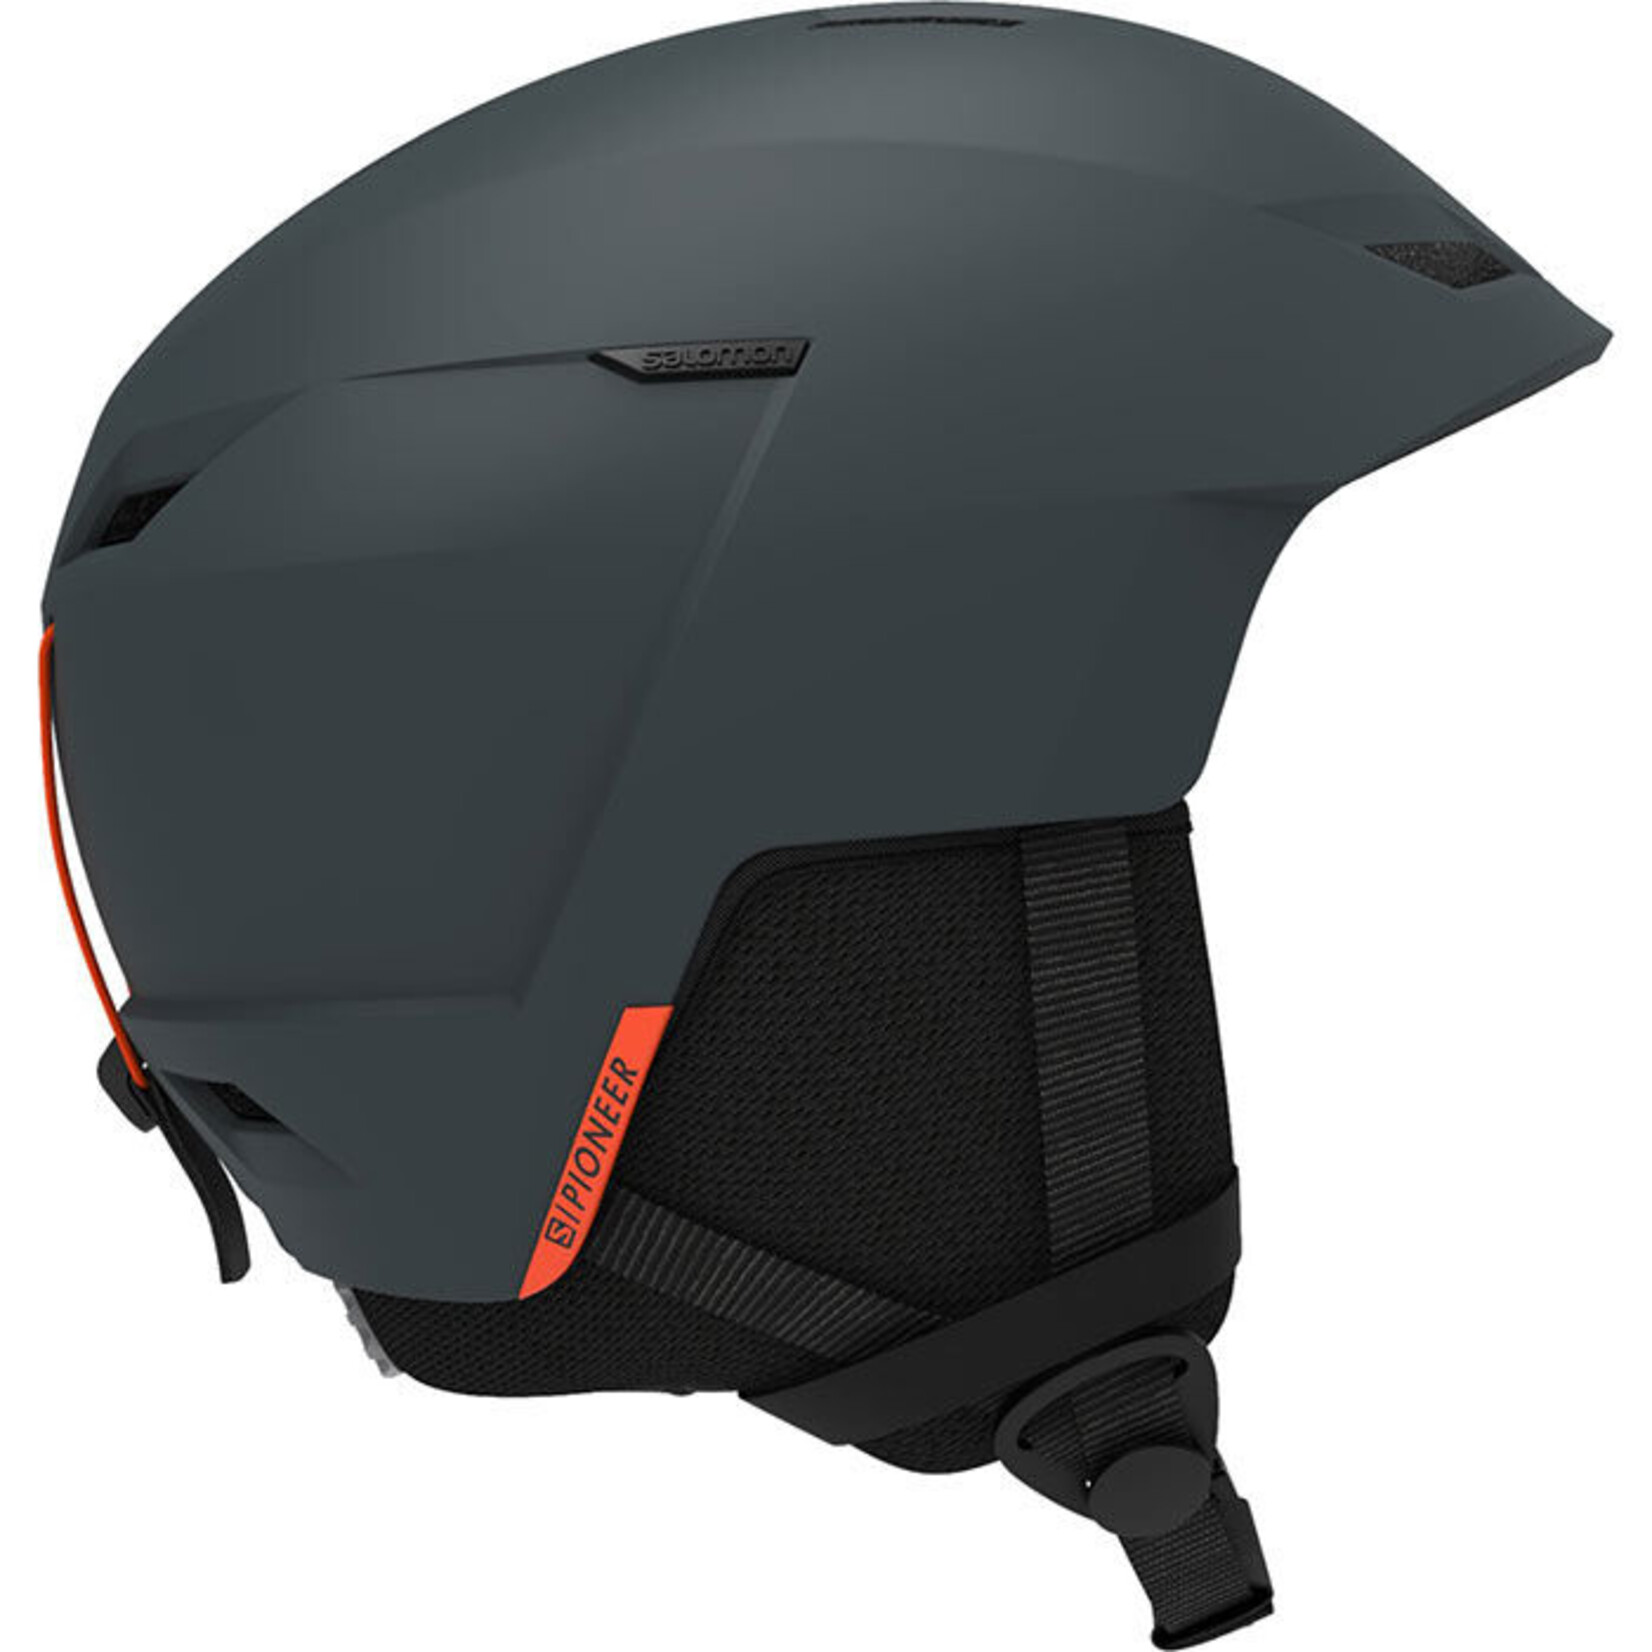 Salomon Pioneer LT Access Ski Helmet